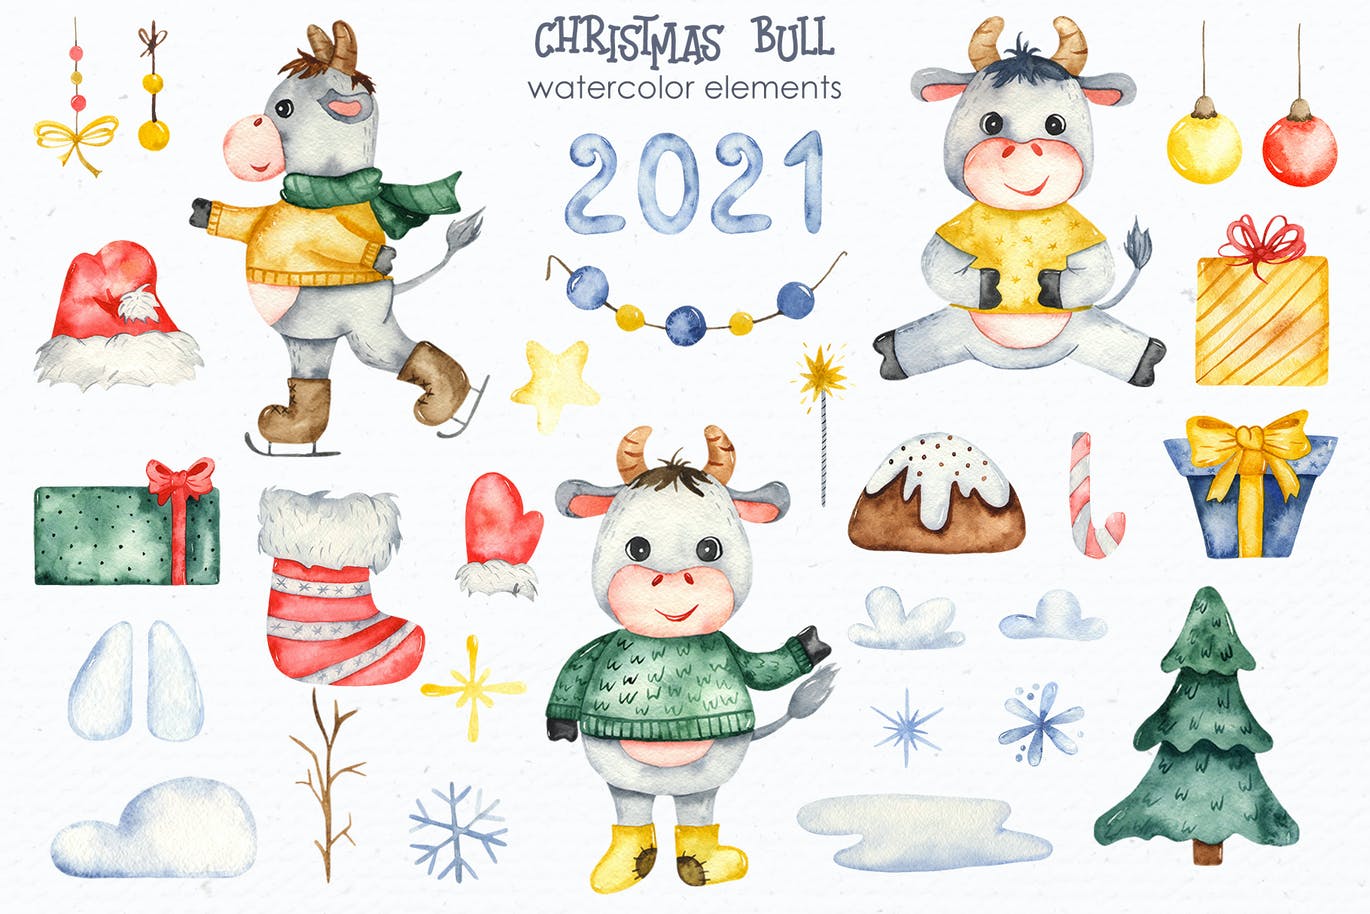 精品手绘水彩风格的新年圣诞节元素插画大集合-JPG，PNG，PSD源文件,编号:82625269